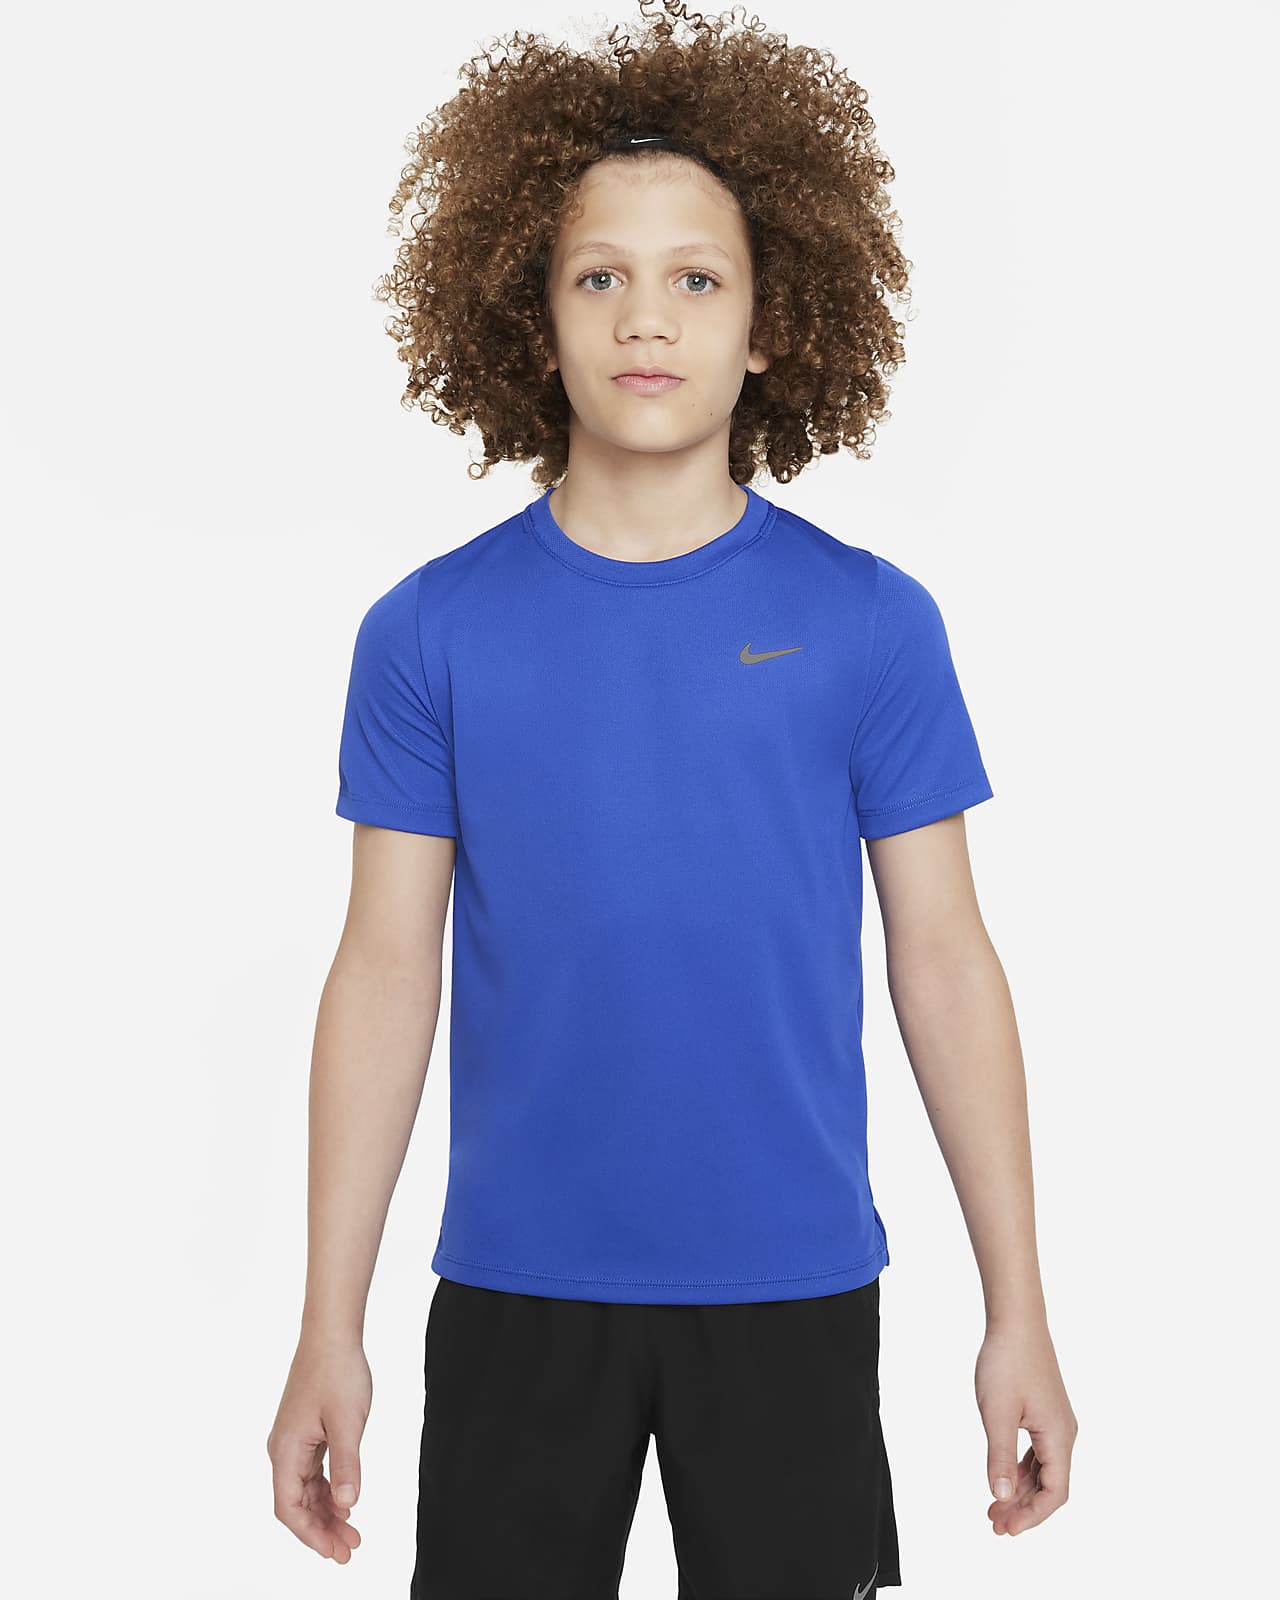 Tréninkové tričko Nike Dri-FIT Miler s krátkým rukávem pro větší děti (chlapce)